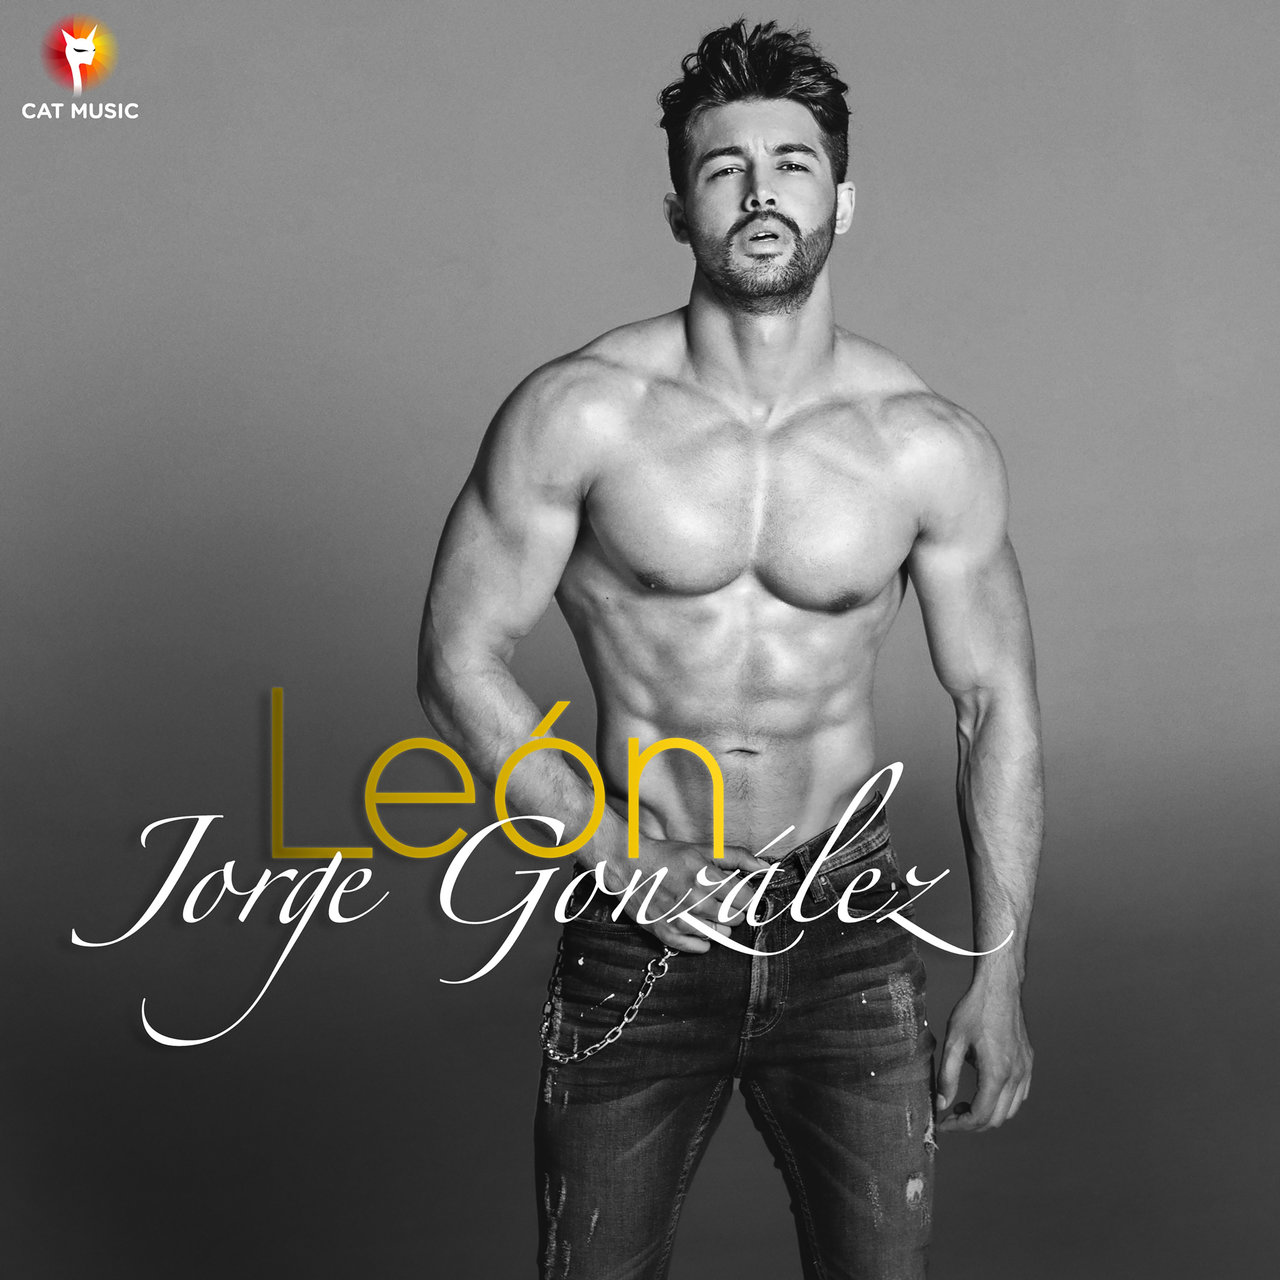 Jorge González — Leon cover artwork